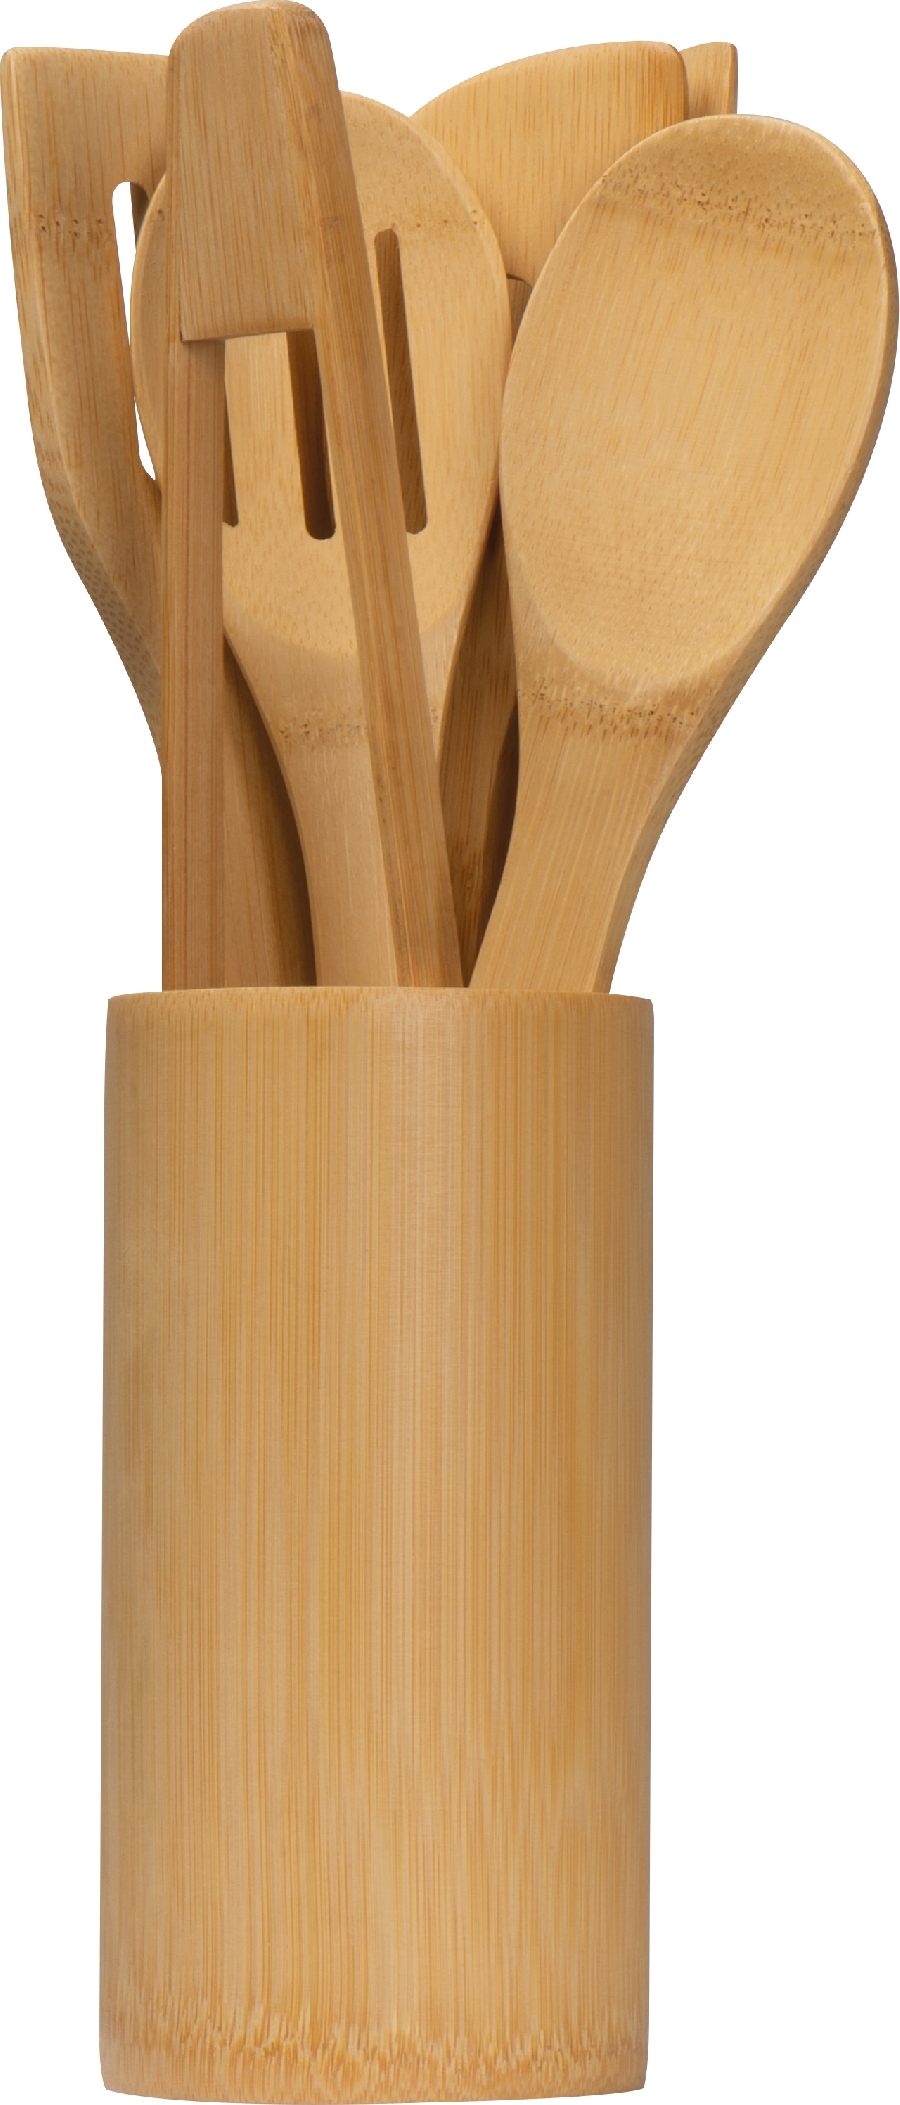 Zestaw bambusowych przyborów kuchennych GM-82566-13